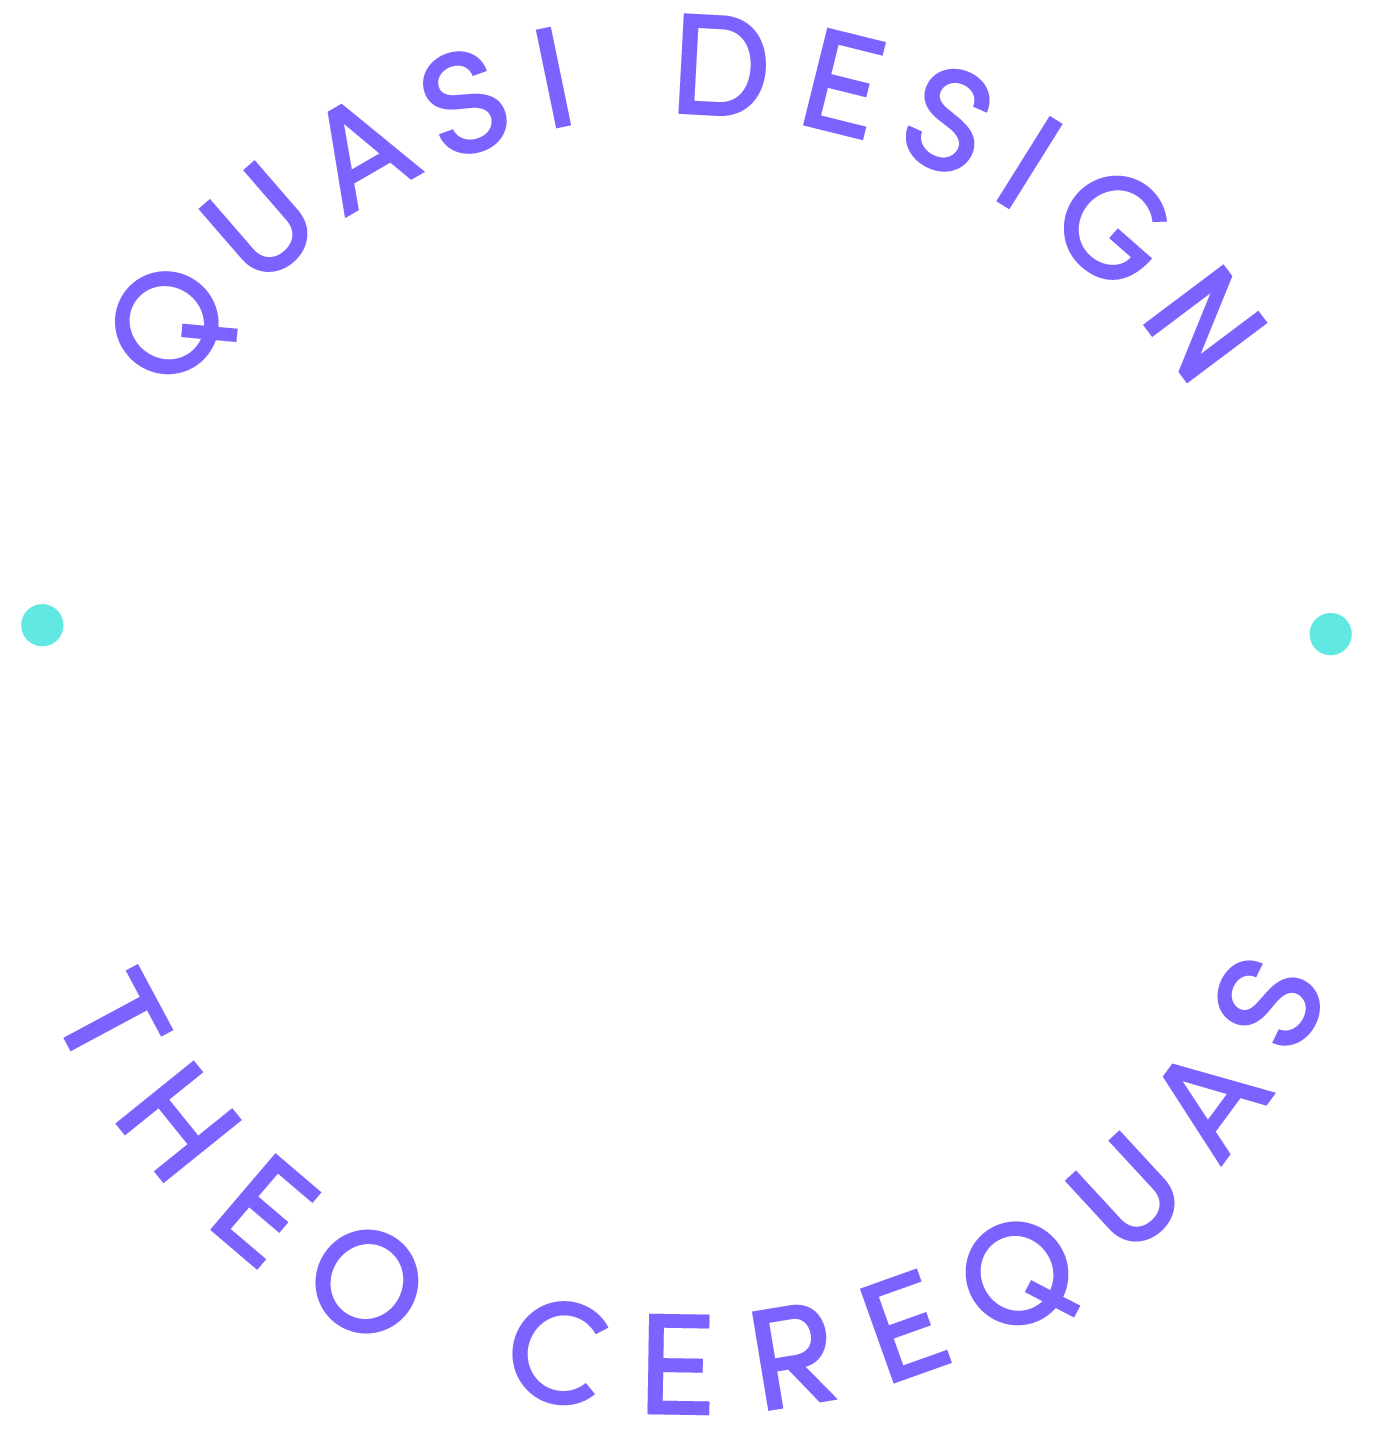 Quasi Design Logo